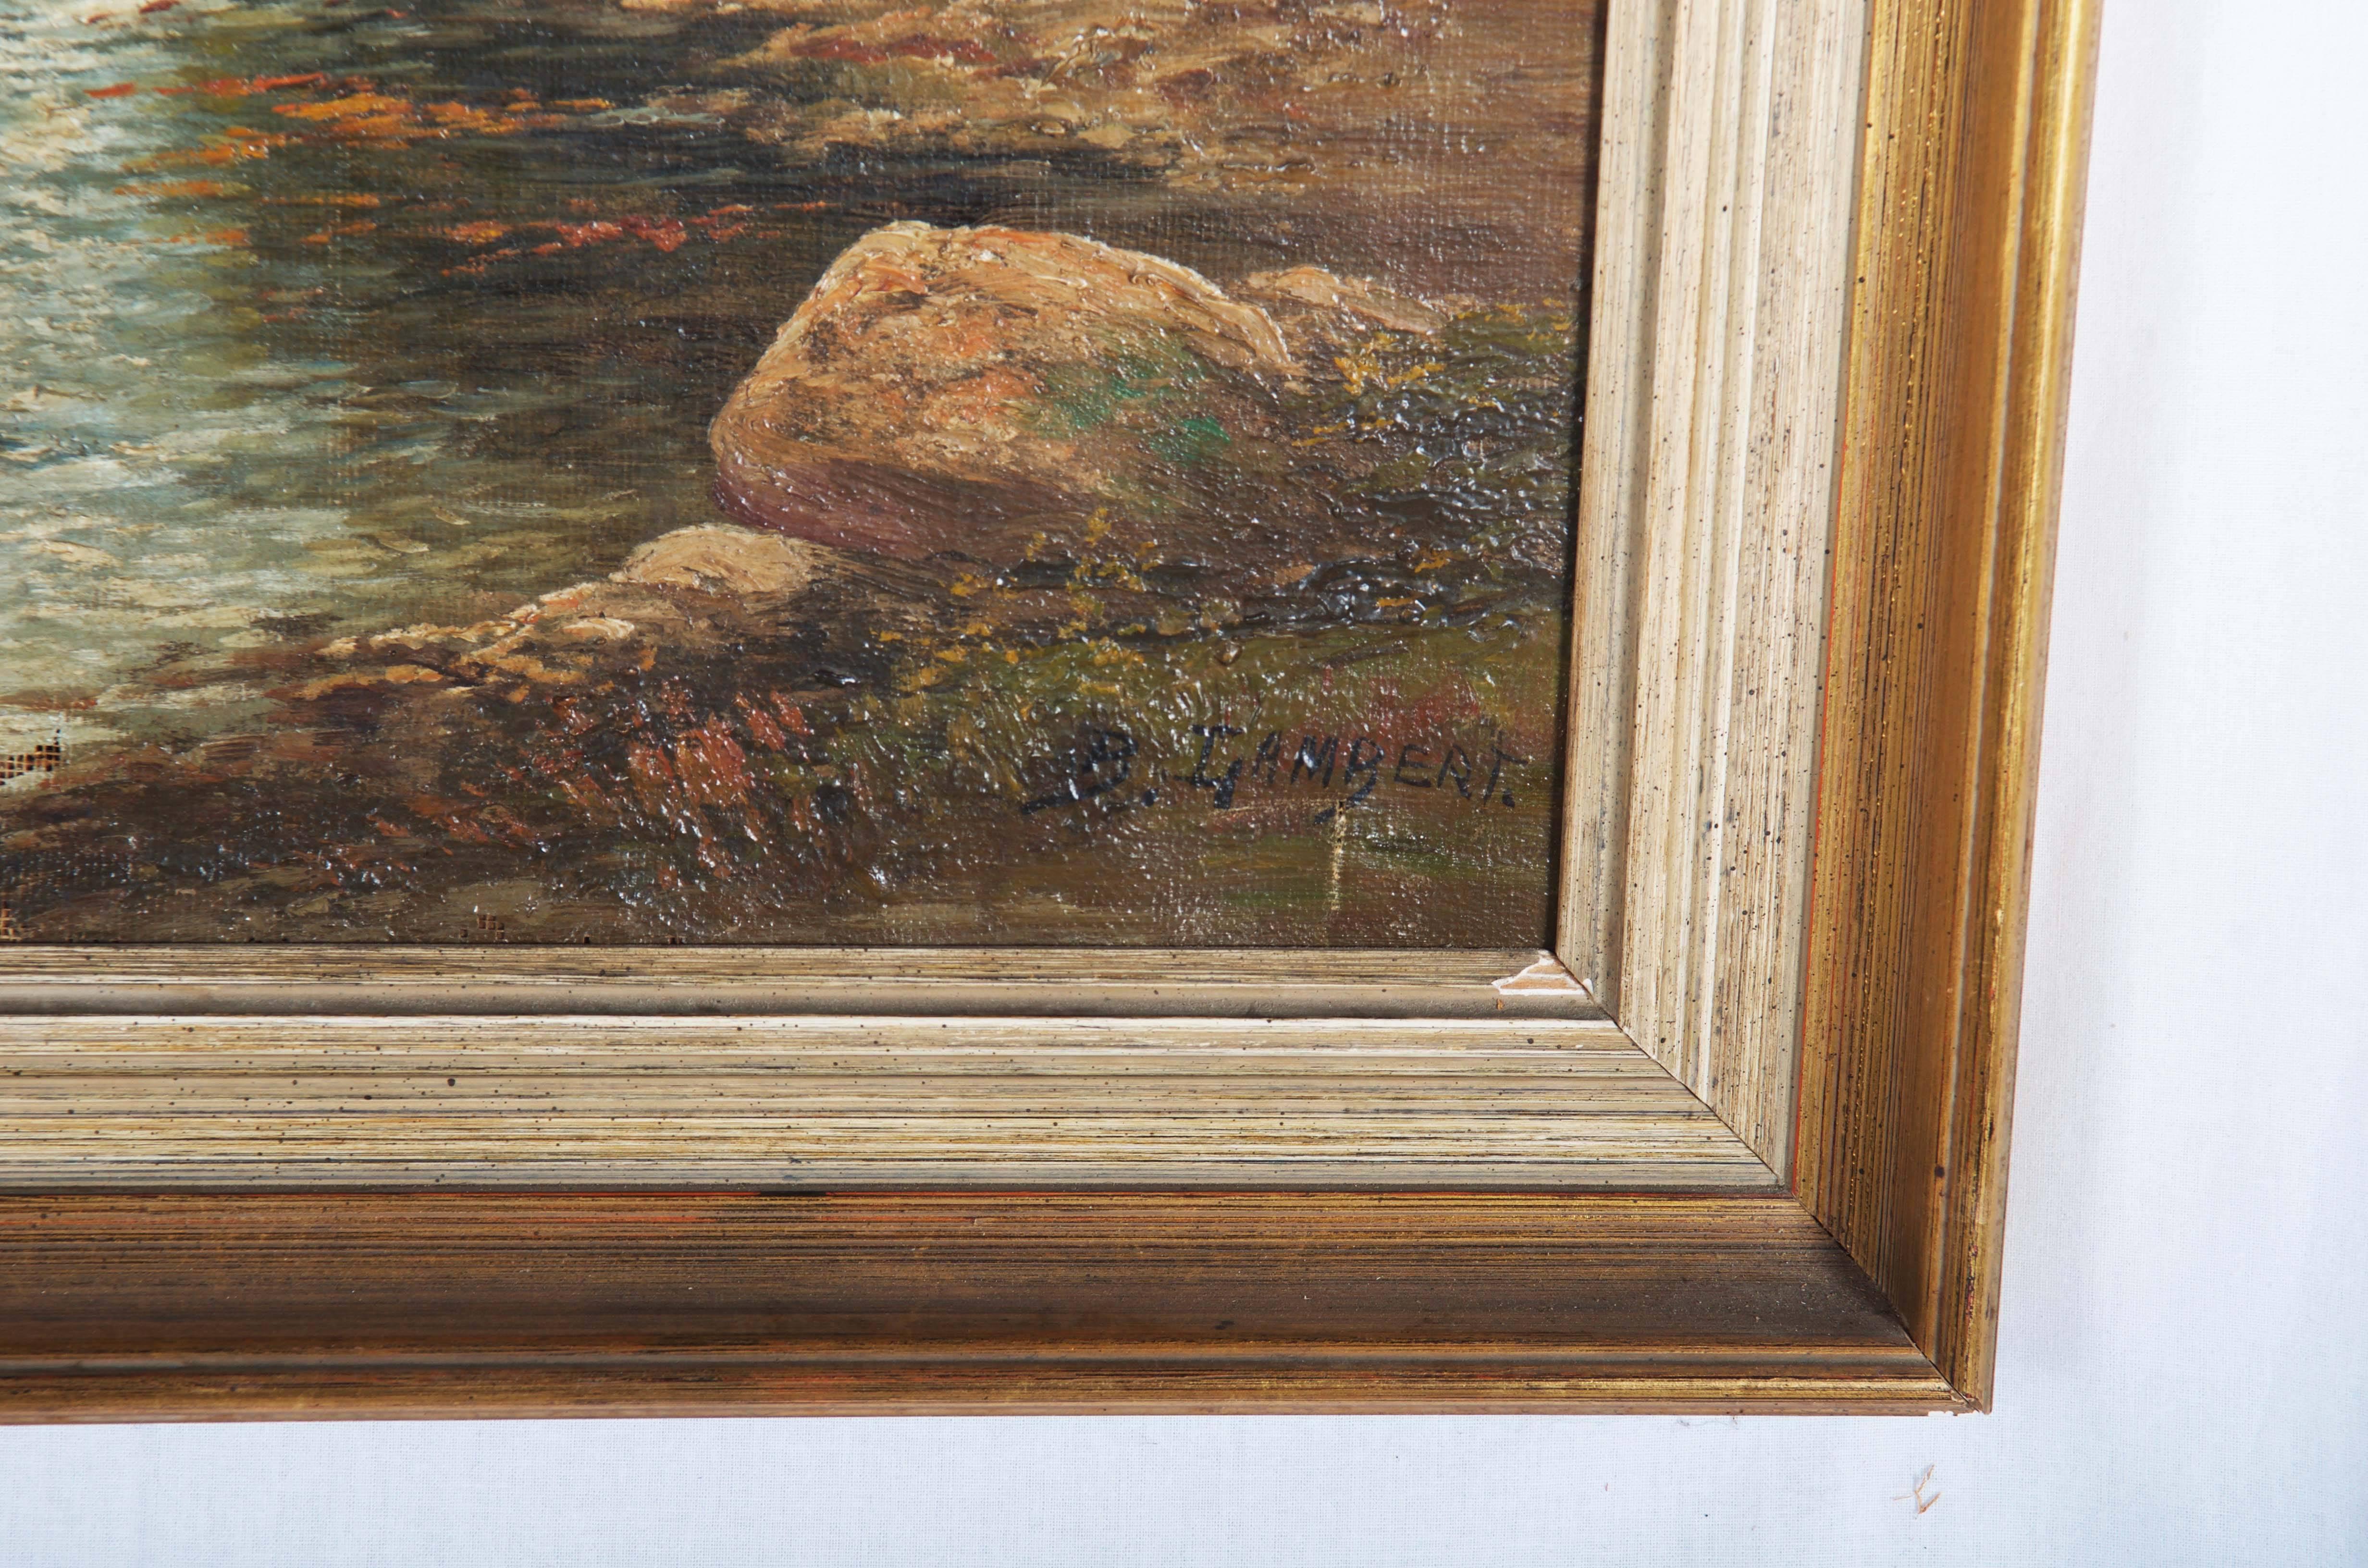 Peinture à l'huile de Kal Kaufmann (signée B. Lambert (1843 - 1901))
Paysage d'automne (scène de forêt) avec rivière
Le cadre extérieur mesure 92 x 45 cm. La photo actuelle mesure 82 x 35 cm. Les petits dommages devraient être restaurés.
  